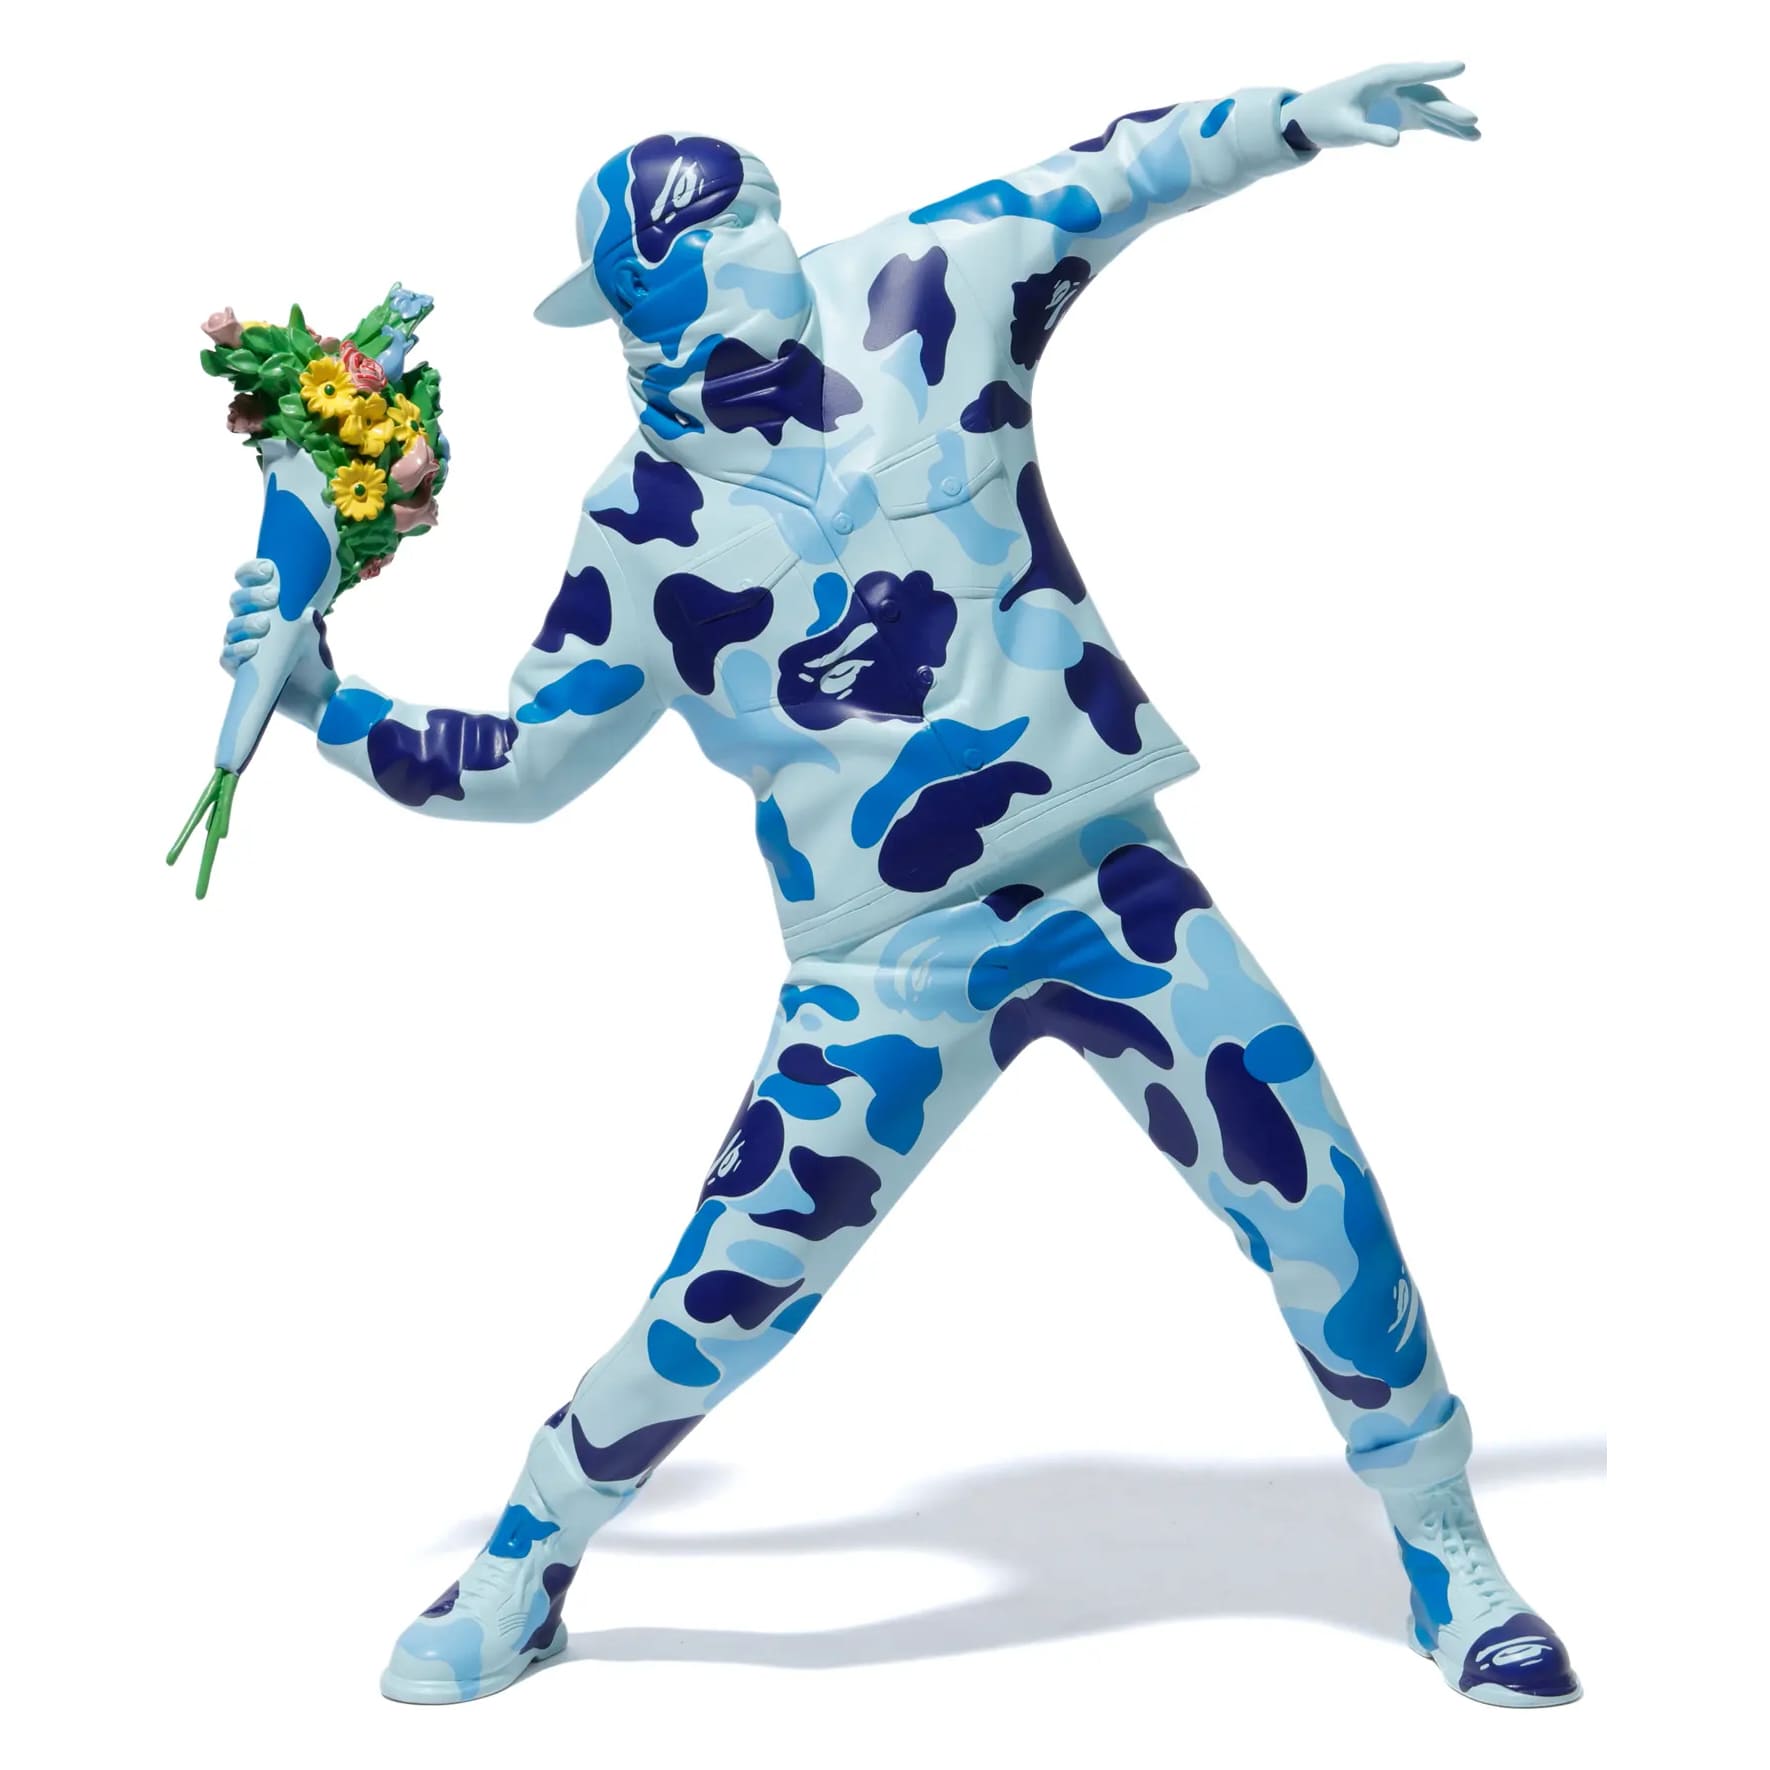 Фигурка Medicom Toy Banksy Brandalism X BAPE Flower Bomber, голубой фигурка совместимая с лего мисс бэнкси teknique из игры фортнайт